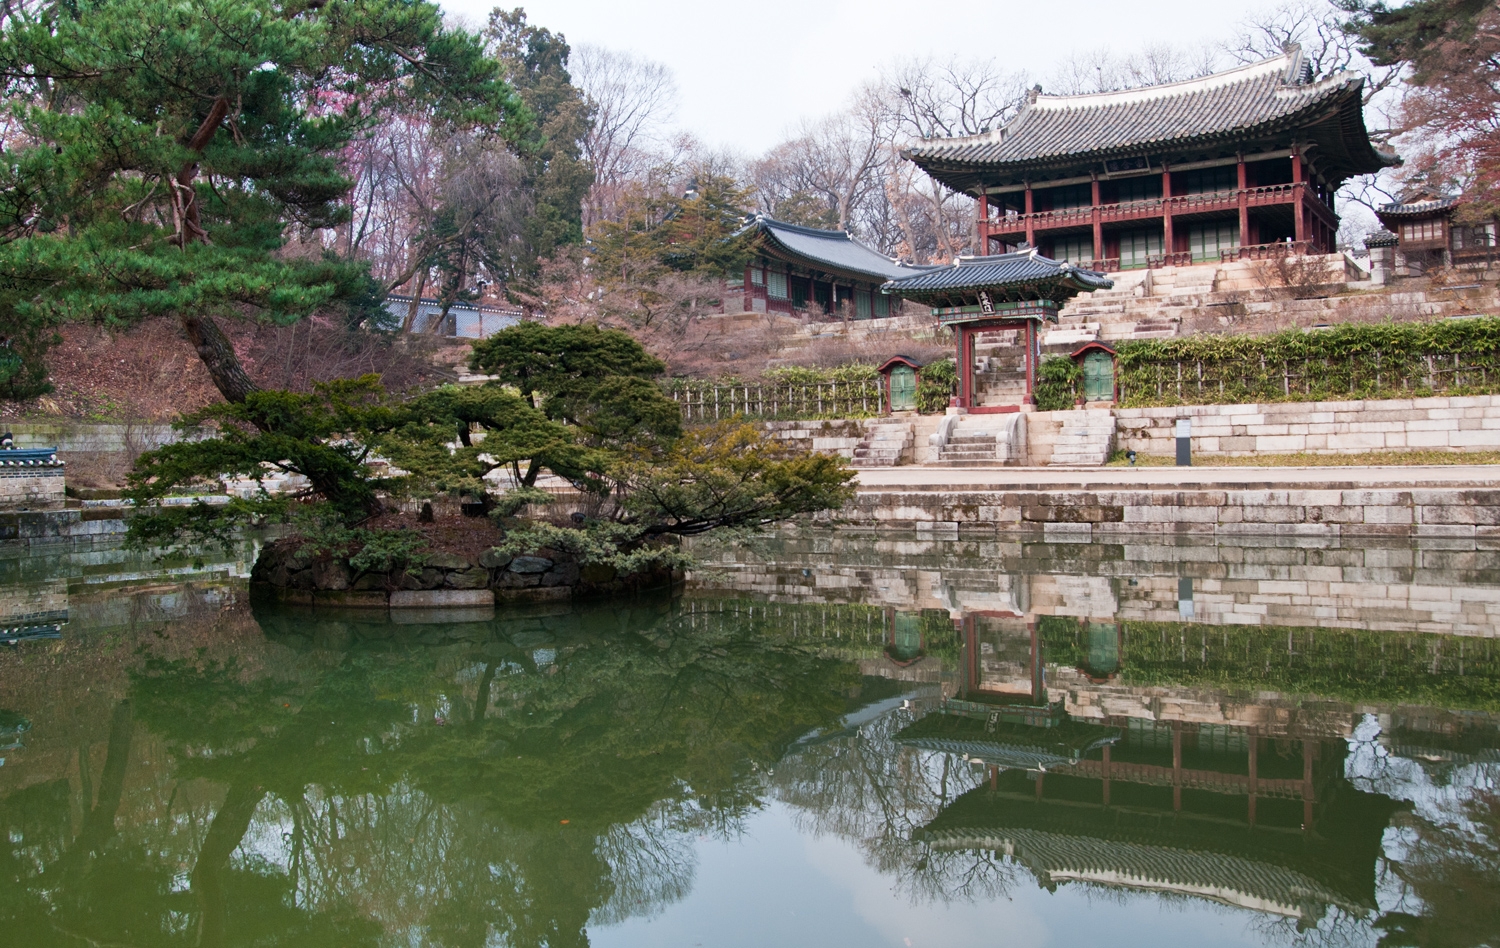 Secret Garden At Waryong-dong